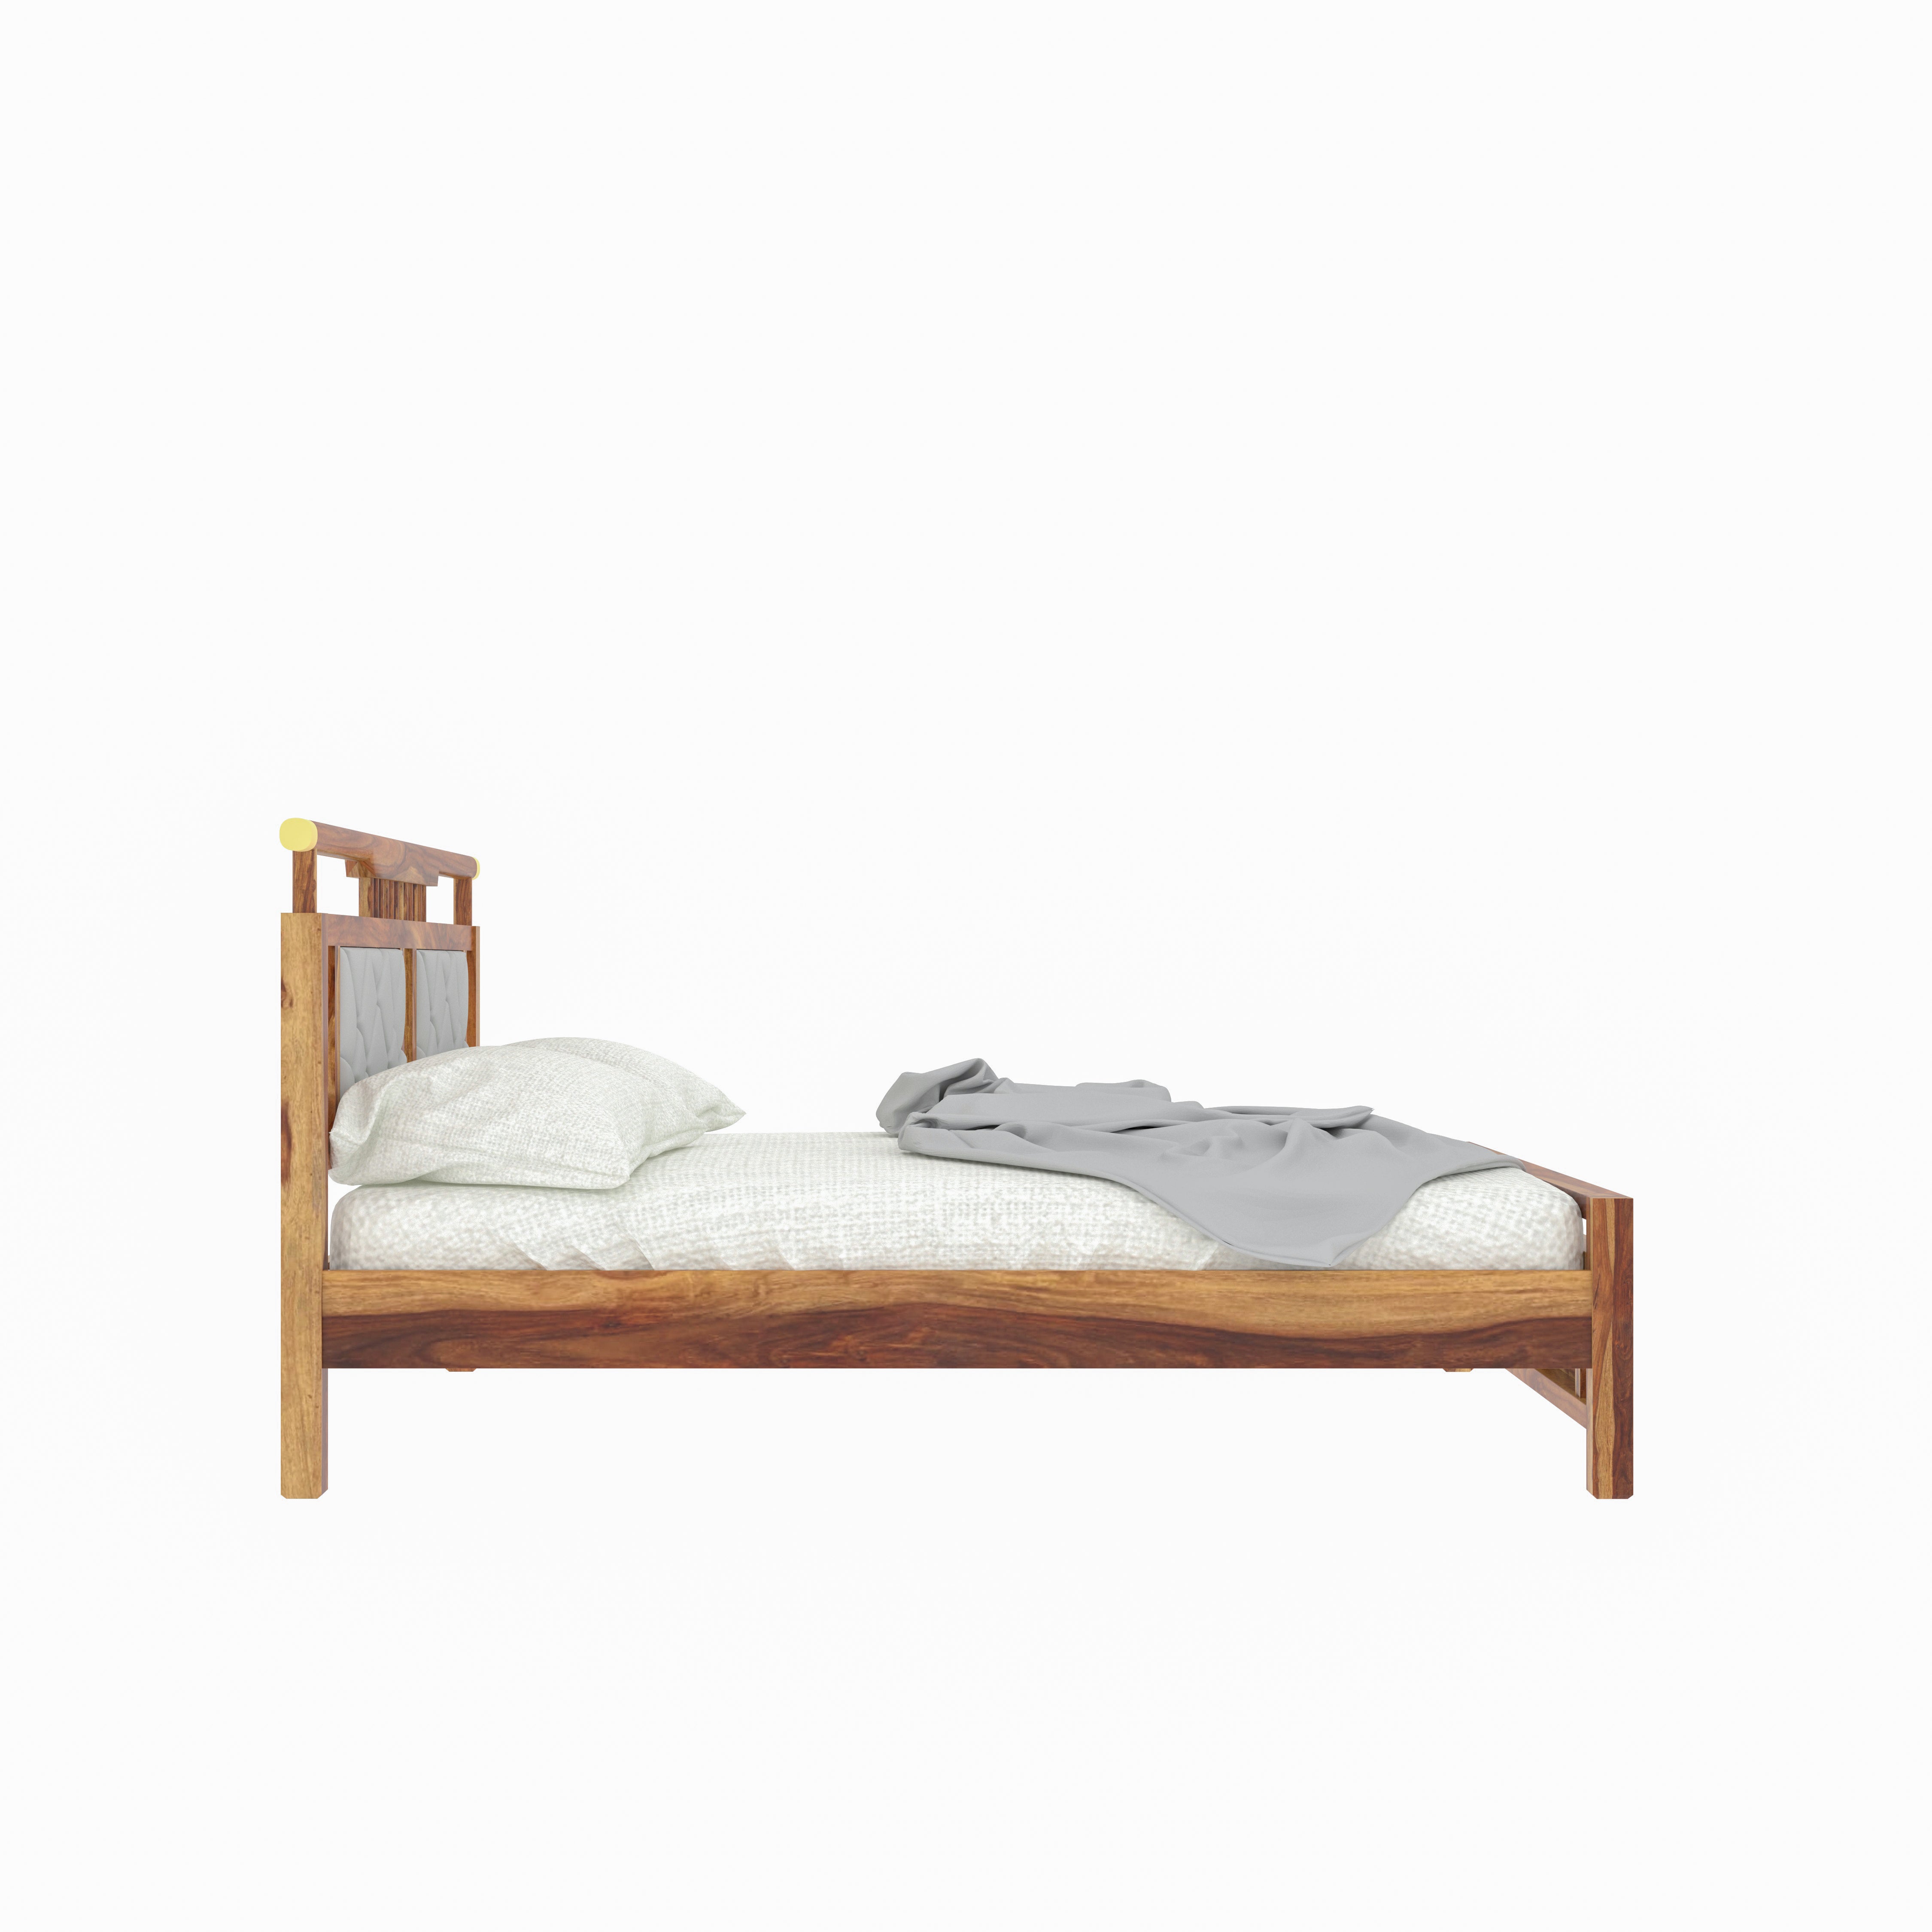 Vintage Natural Crown Finished Wooden Antique Handmade Bed Bed